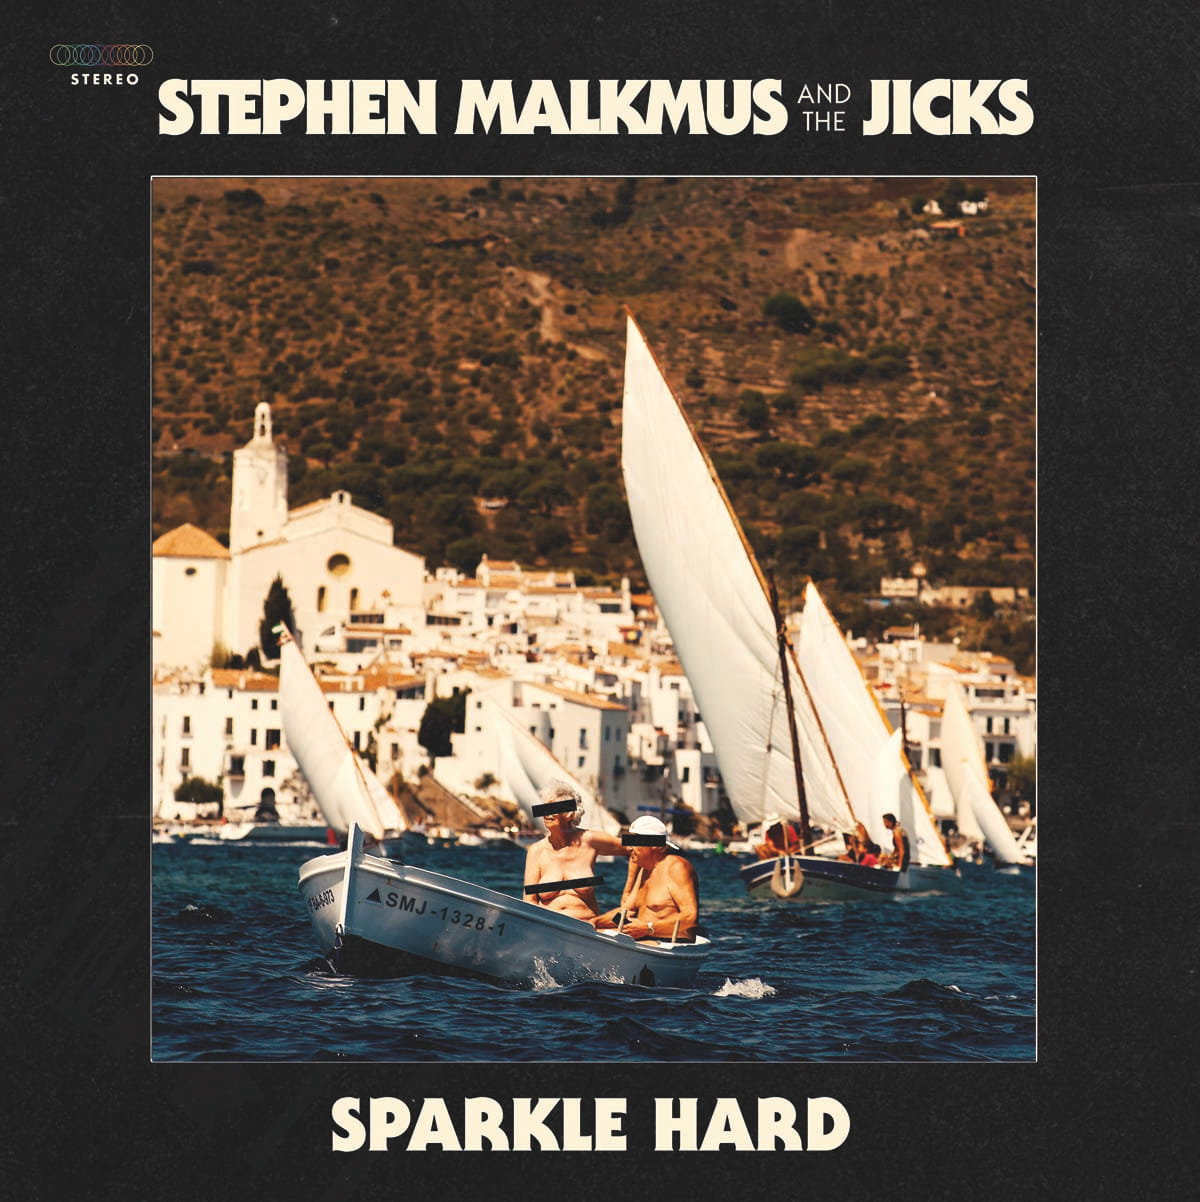 スティーヴン・マルクマス＆ザ・ジックス、4年ぶり新作『Sparkle Hard』リリース決定！キム・ゴードン参加曲も収録！ music180329_stephenmalkmus_2-1200x1202